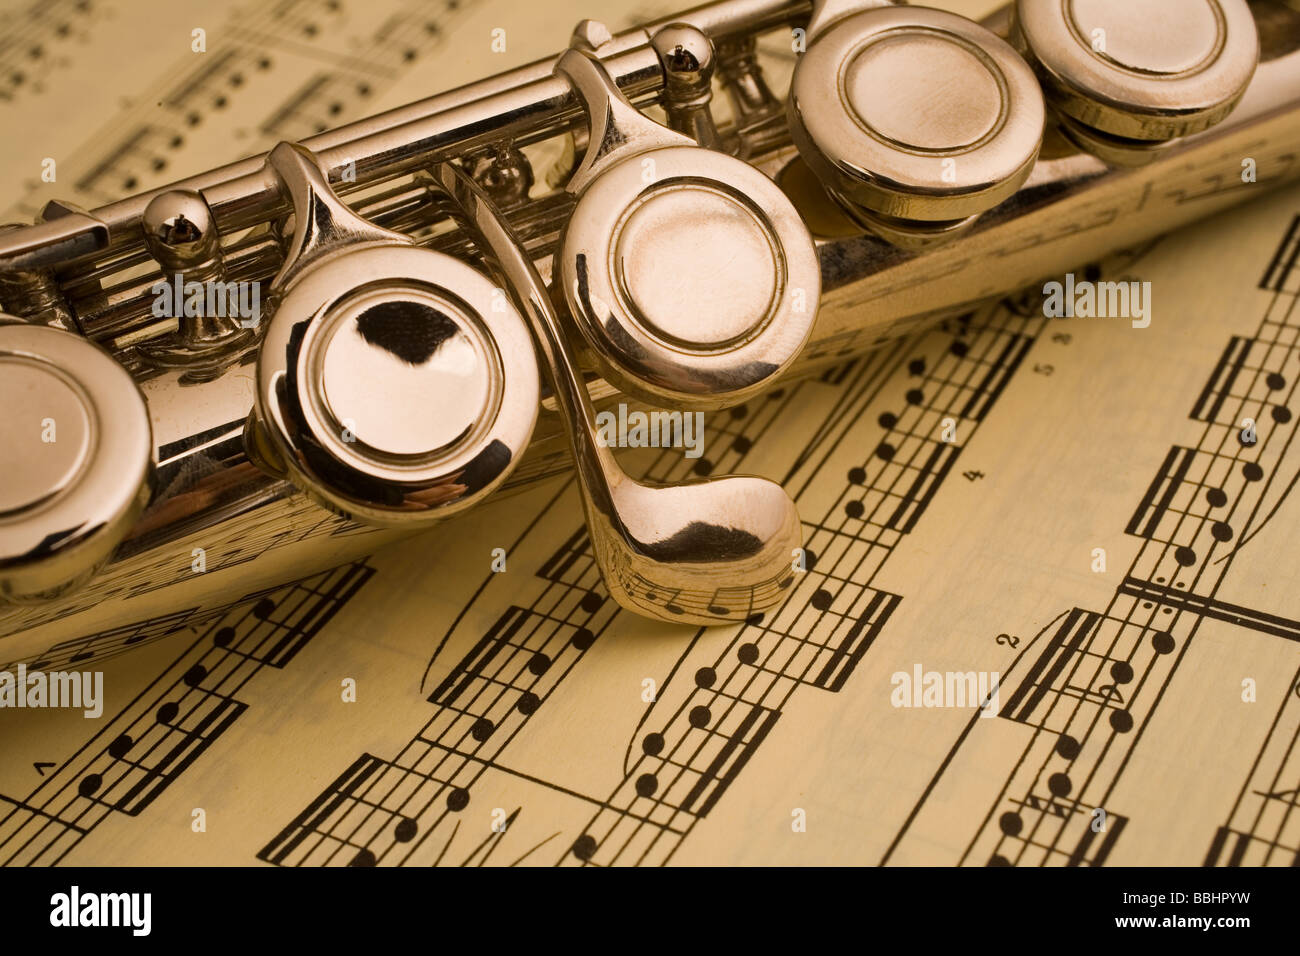 detalle de flauta sobre partitura Stock Photo